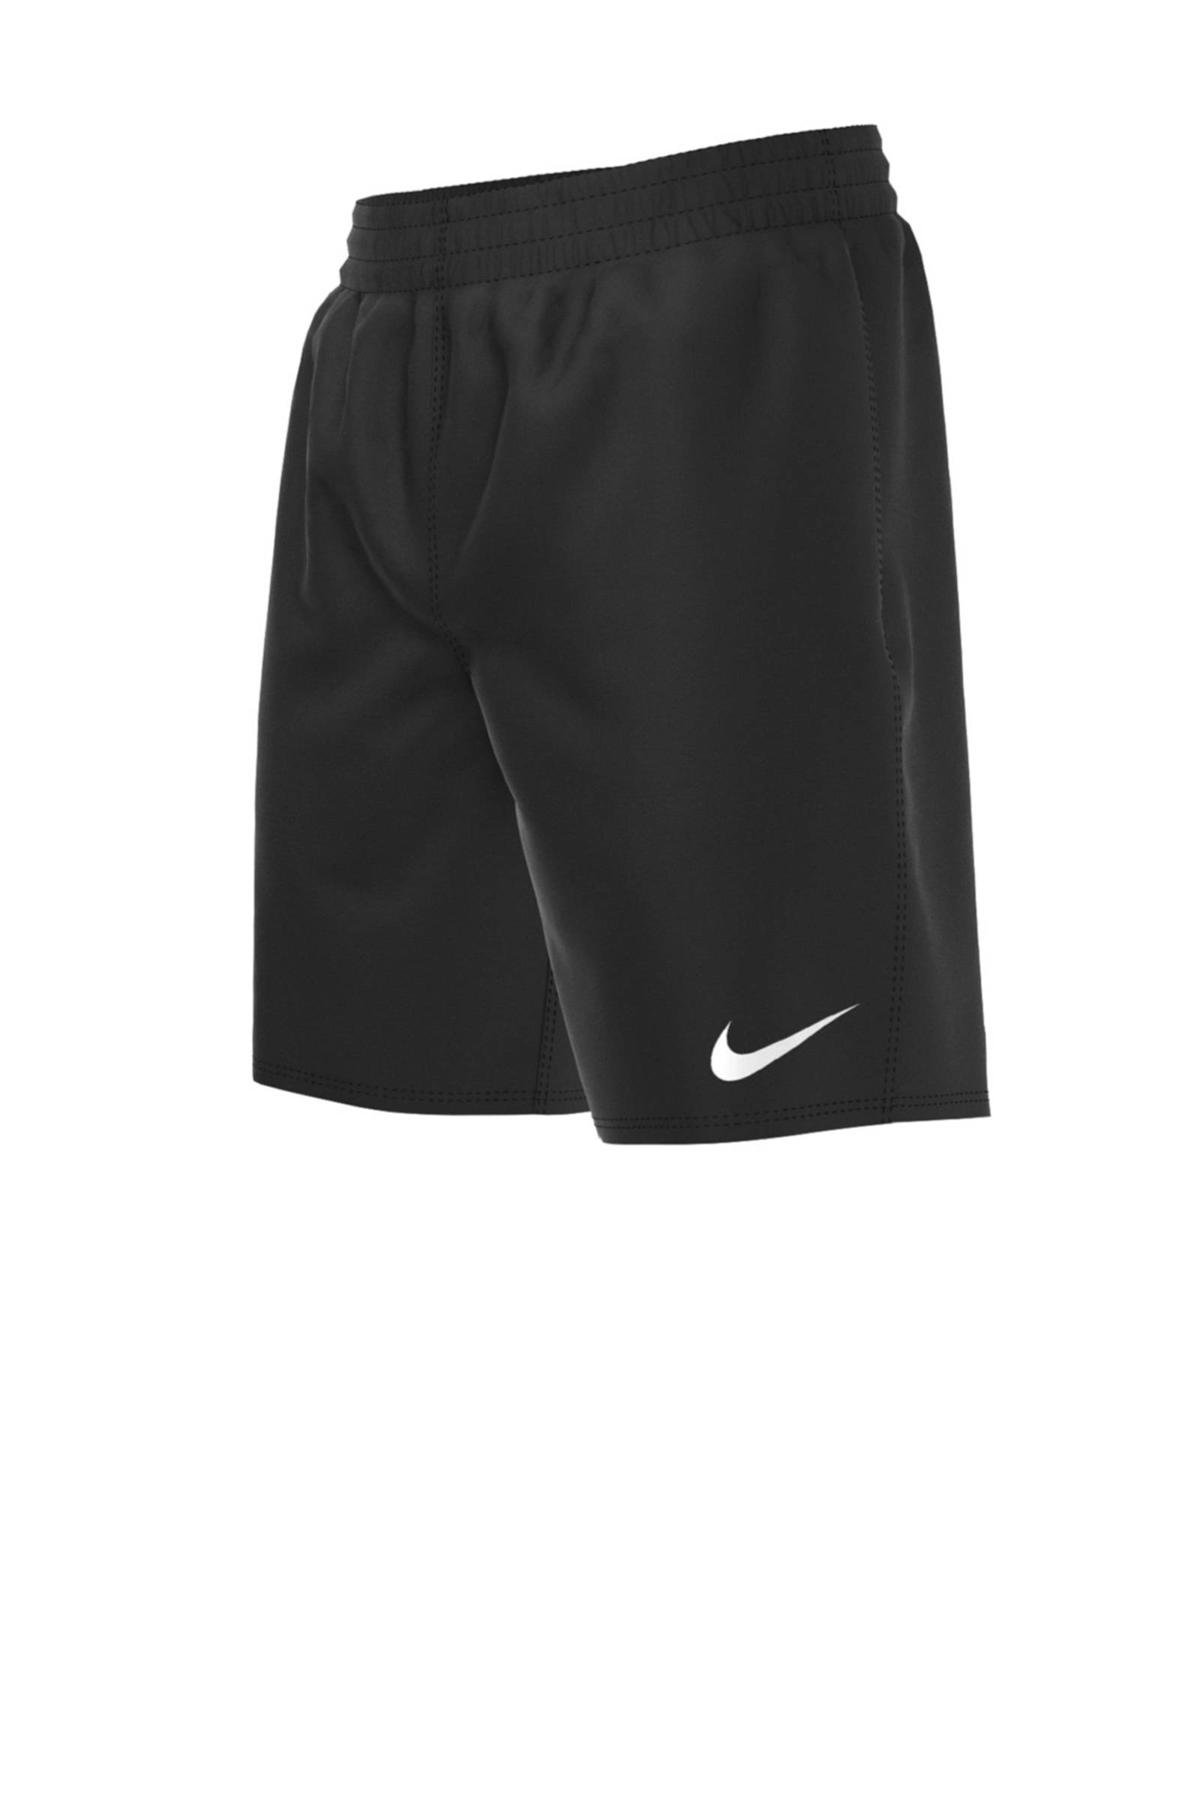 Nike zwemshort Essential 6" zwart wehkamp